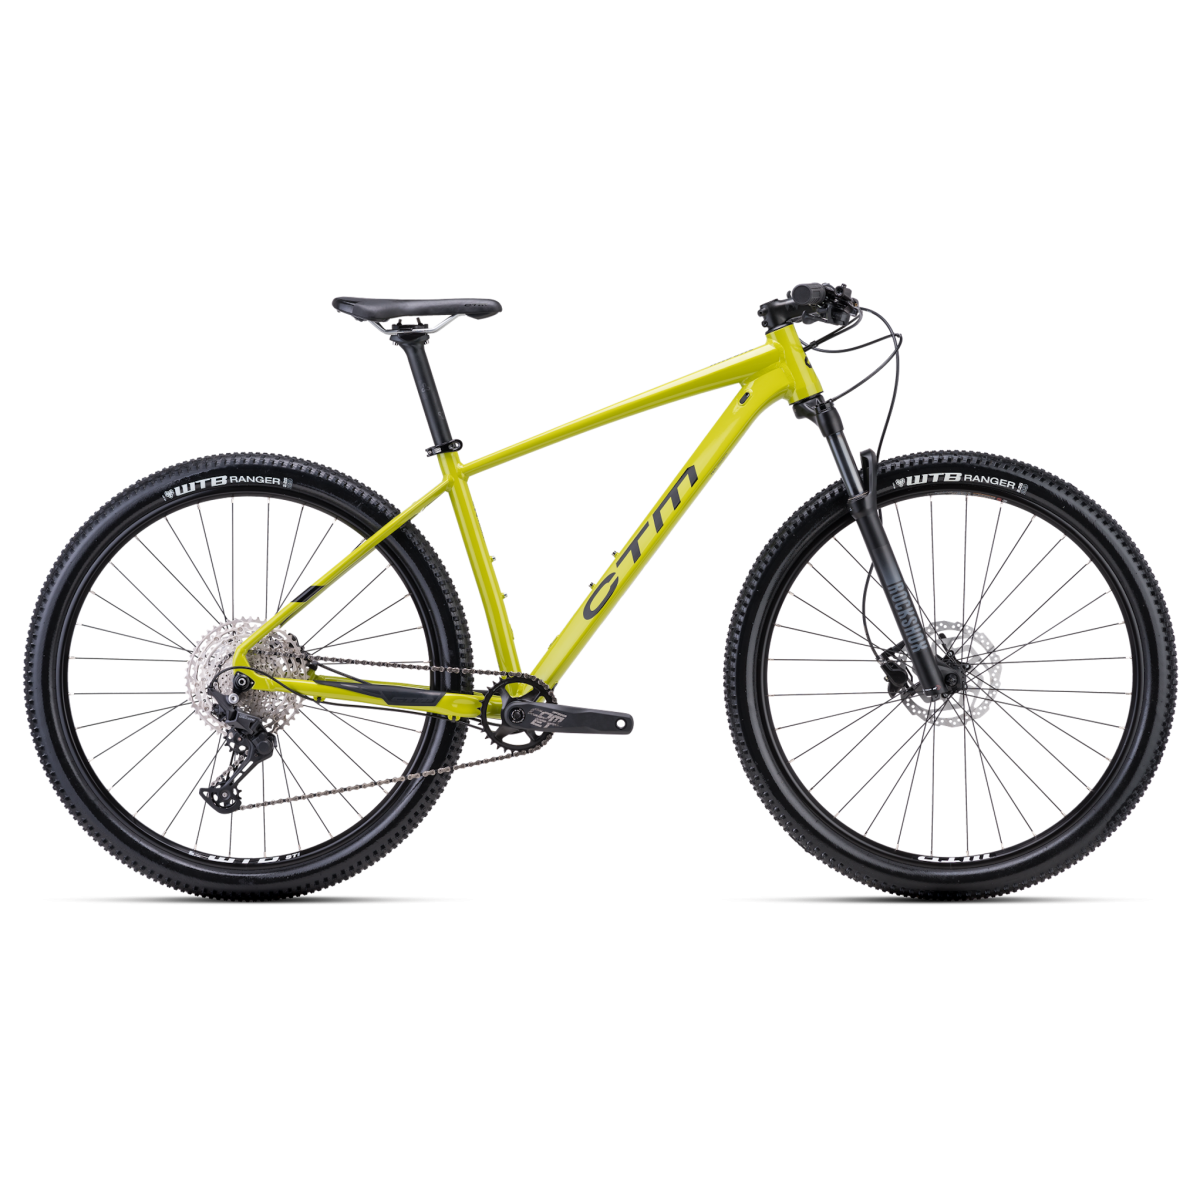 CTM MTB 29" RASCAL 1.0 bicycle - yellow